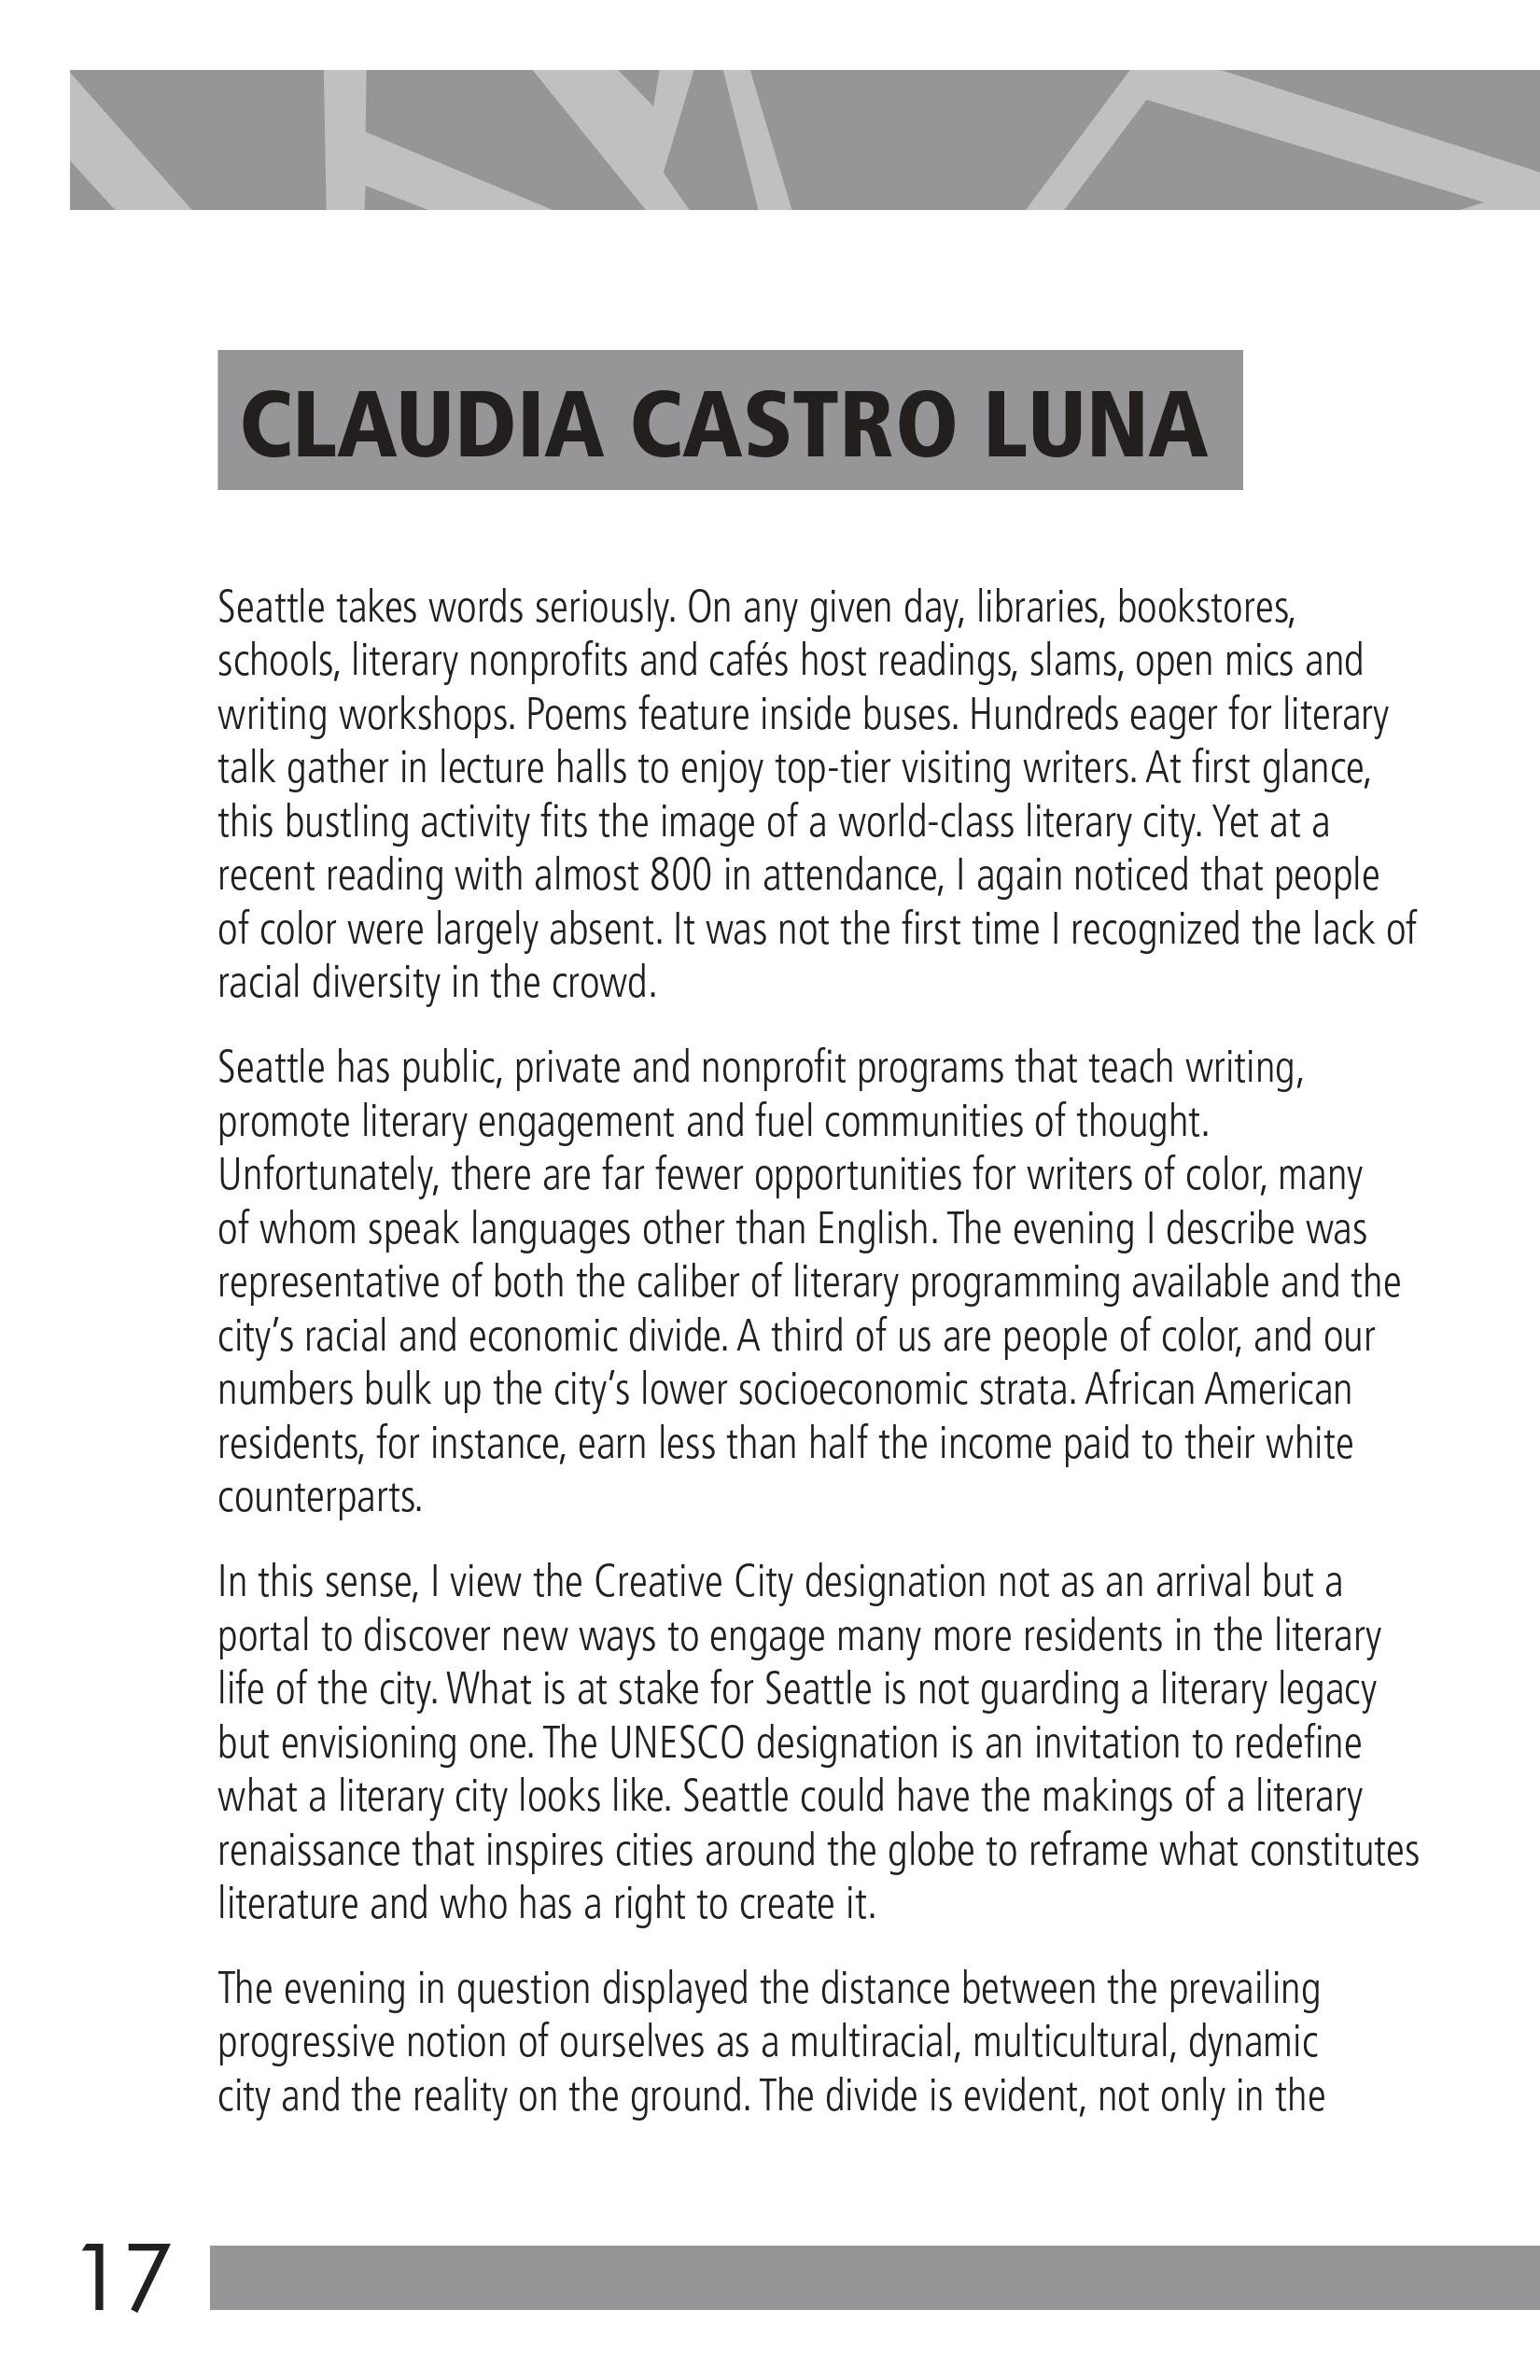 Claudia Castro Luna Page 17.jpg